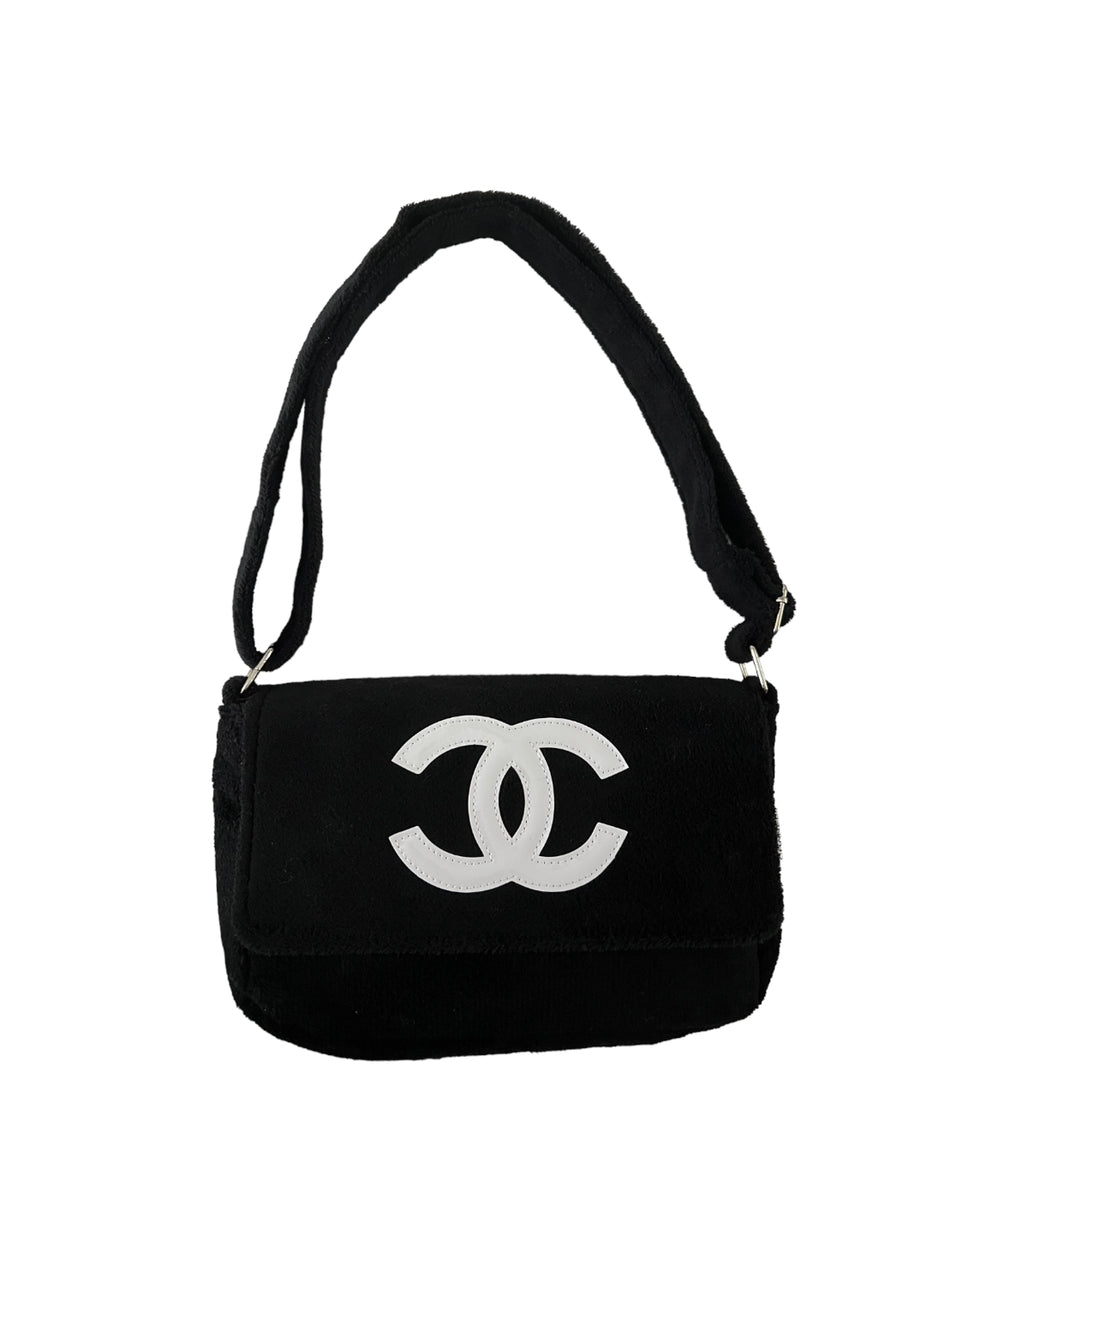 Chanel VIP Flap Bag - Black Shoulder Bags, Handbags - CHA224959